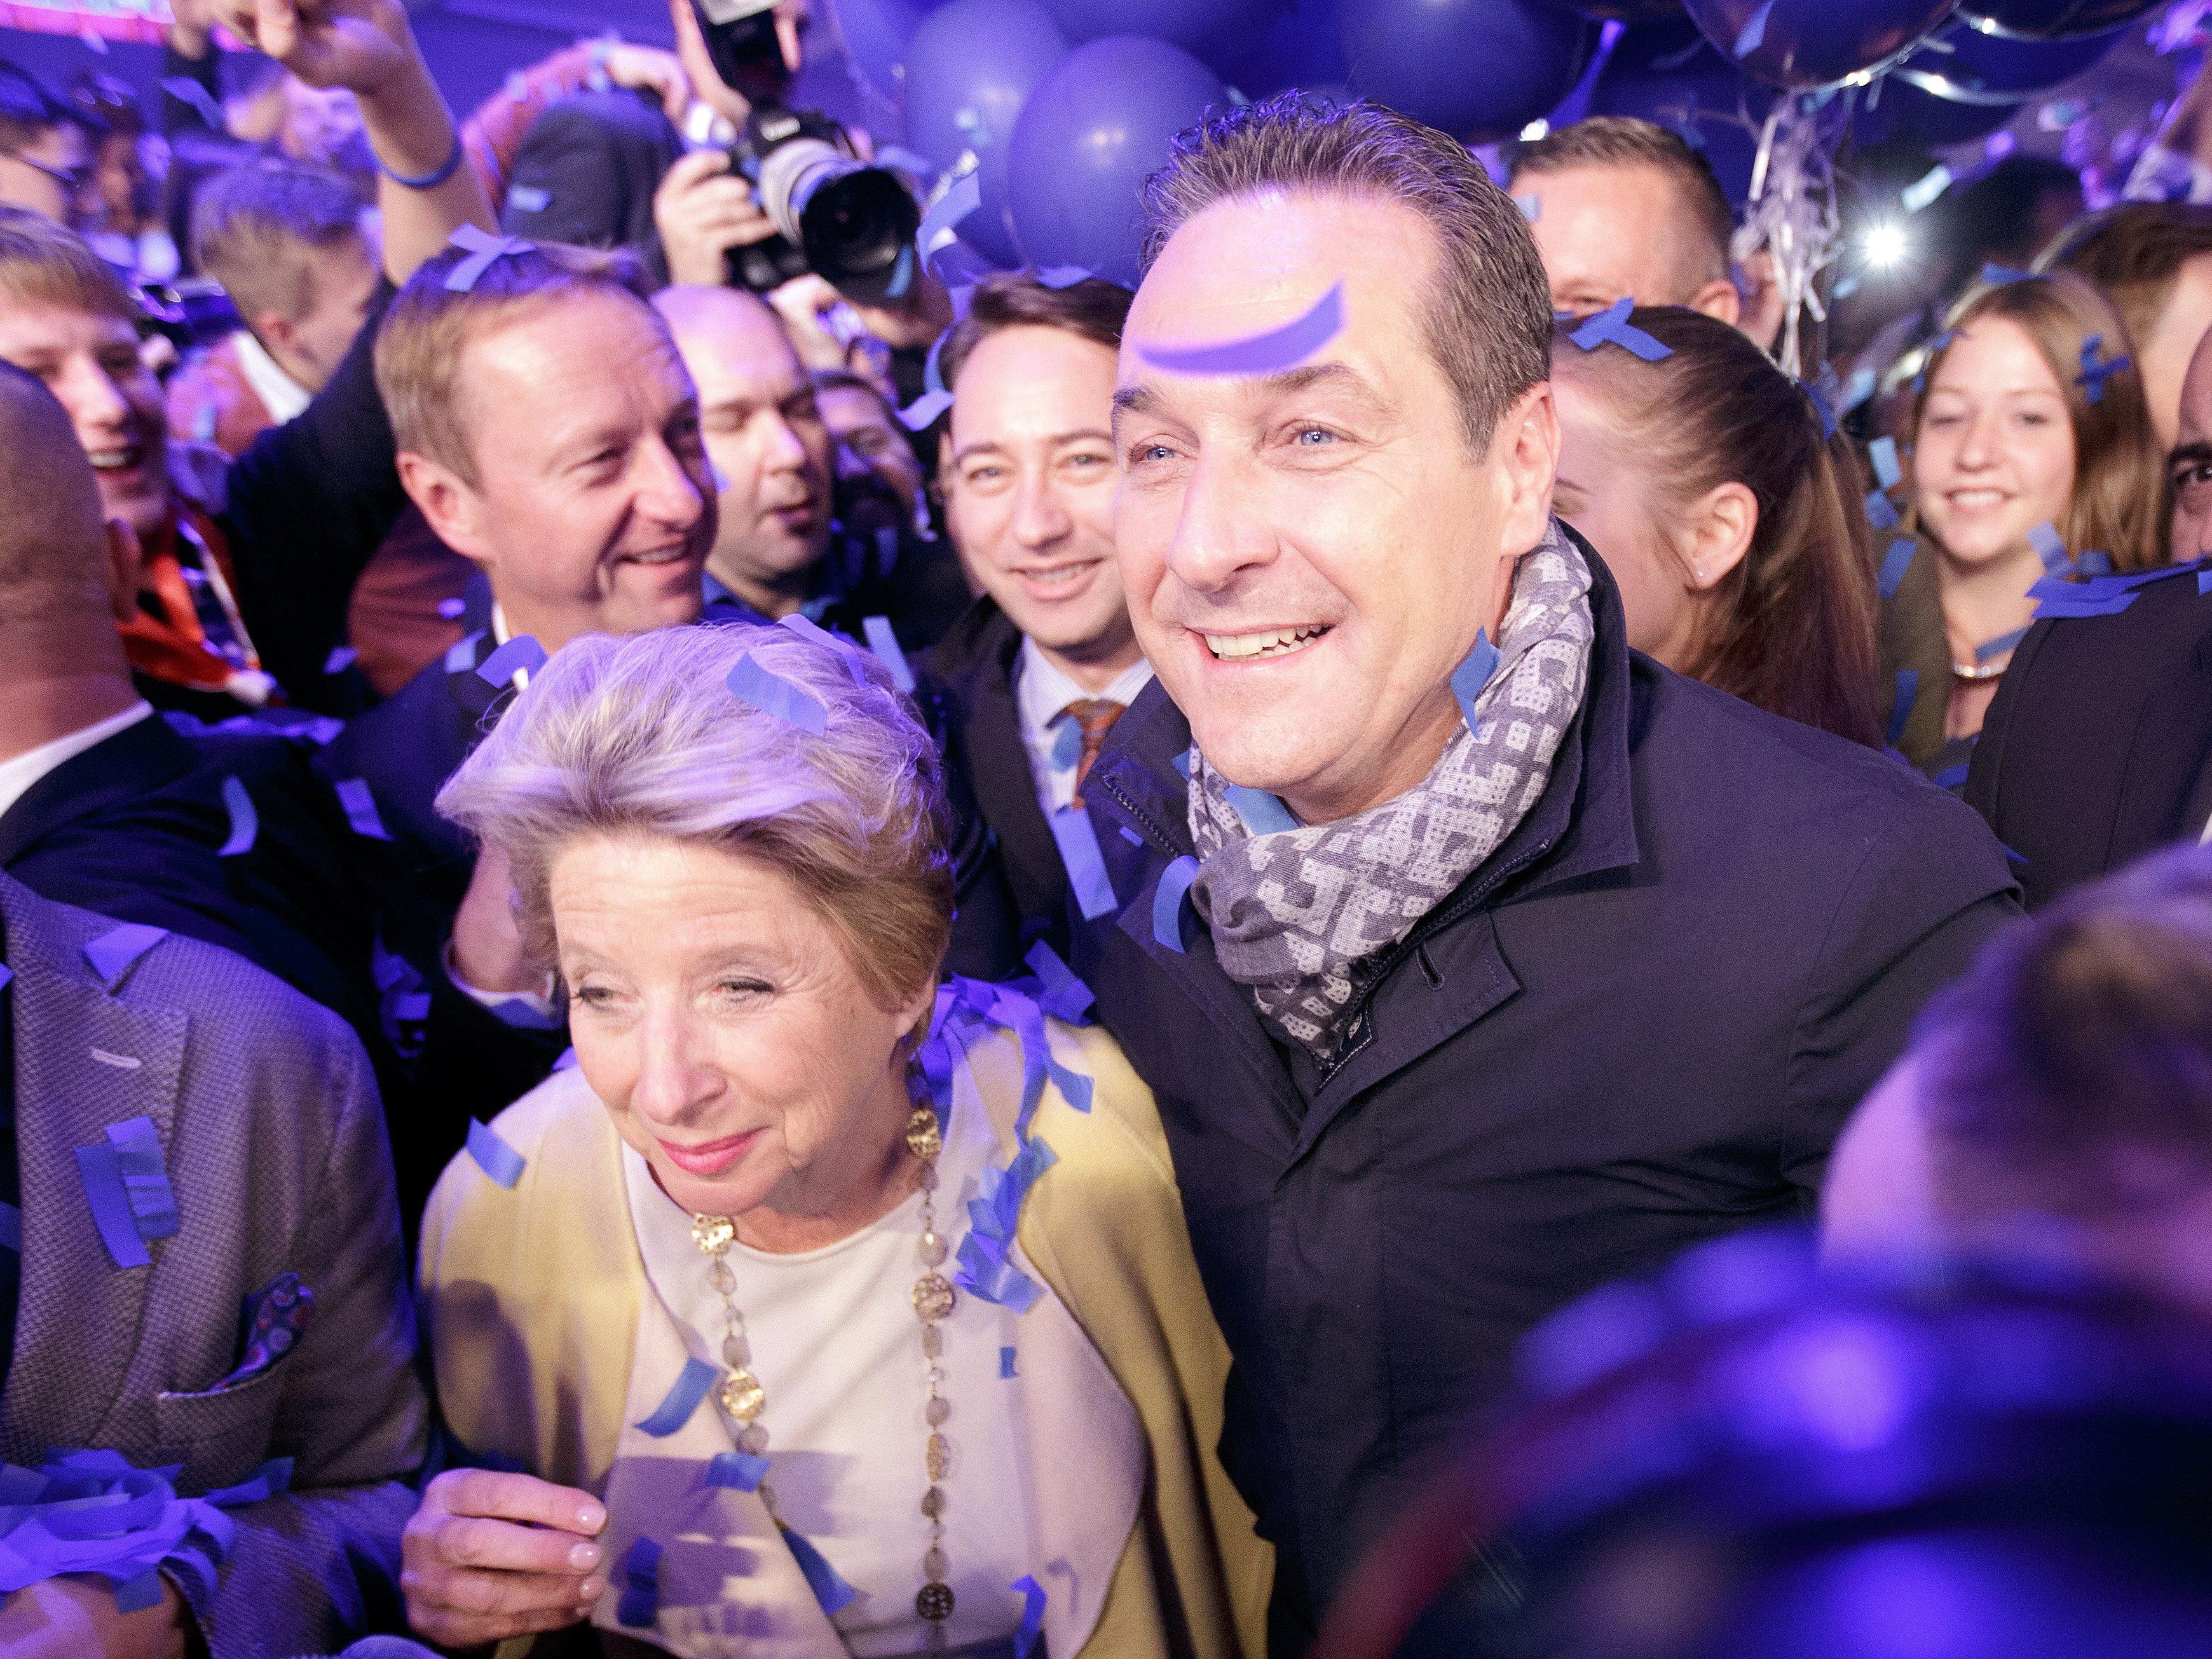 Wien-Wahl - Strahlegesichter bei Strache-Sause: "Hab euch alle lieb"